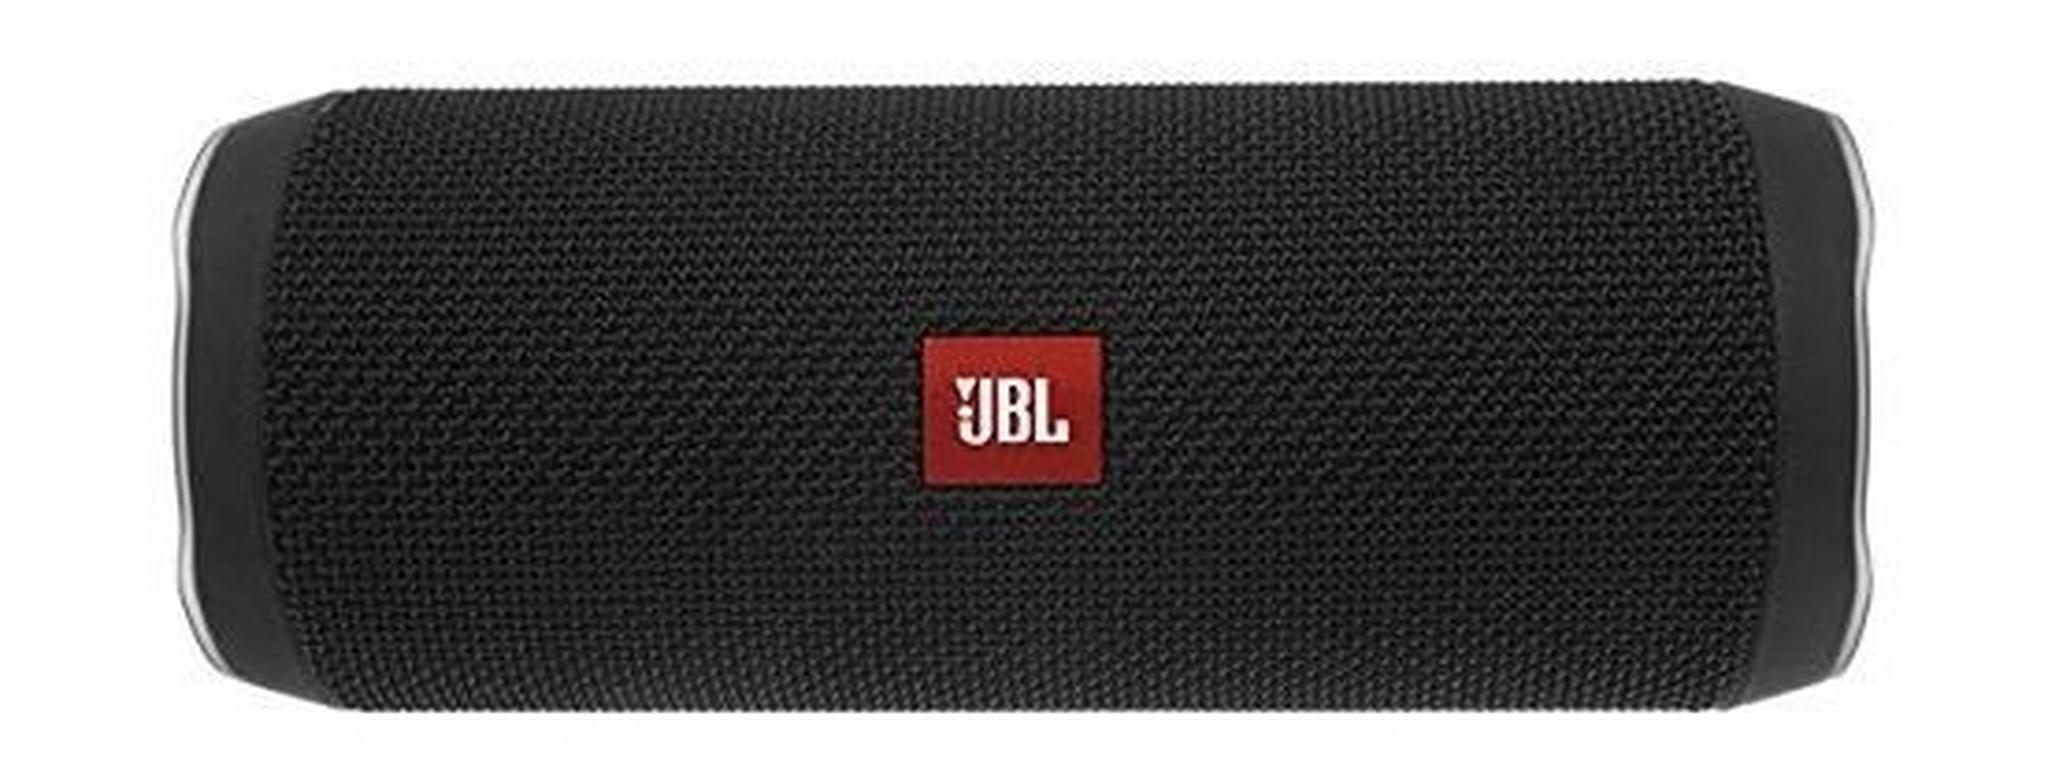 JBL Flip 4 Wireless Bluetooth Speaker Black + JBL T110BT Earphone Black